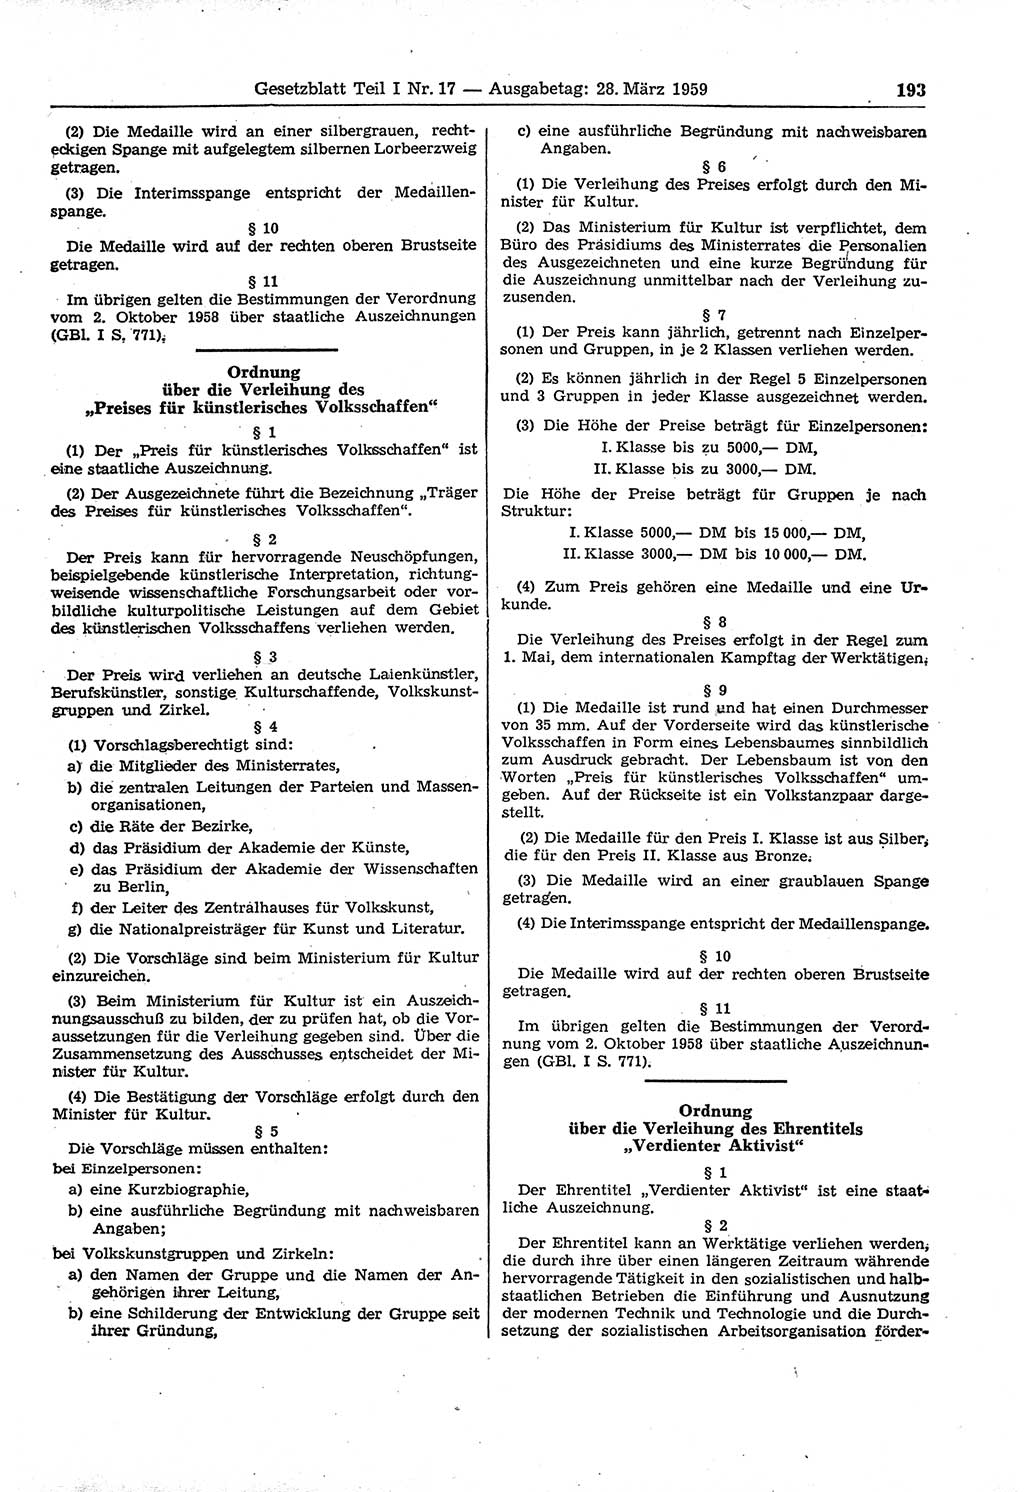 Gesetzblatt (GBl.) der Deutschen Demokratischen Republik (DDR) Teil Ⅰ 1959, Seite 193 (GBl. DDR Ⅰ 1959, S. 193)